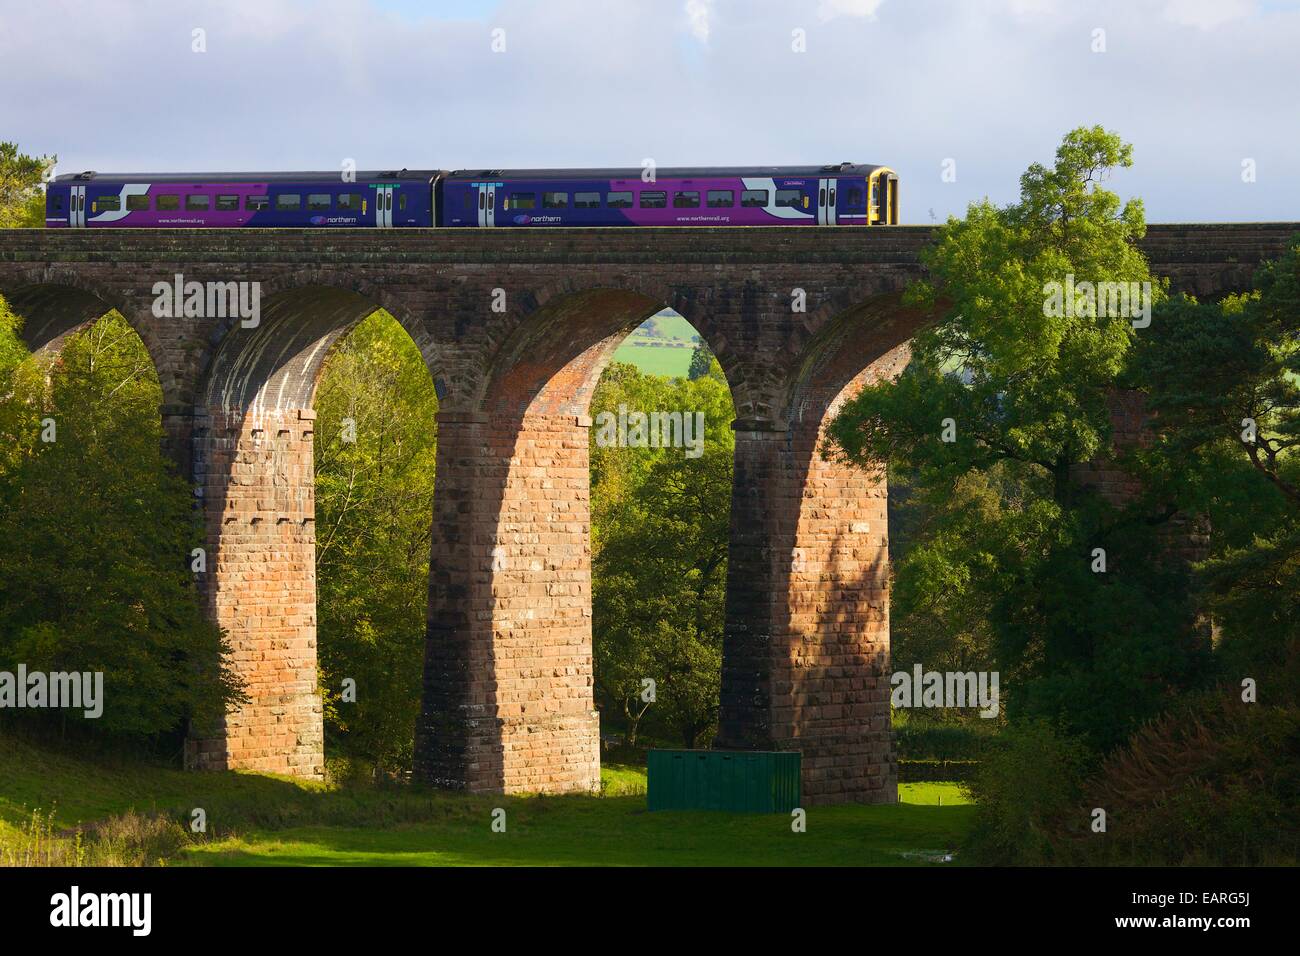 Rampa settentrionale Sprinter treno sul arrivino a Carlisle linea ferroviaria, secco Beck viadotto, Armathwaite, Eden Valley, Cumbria, Englan Foto Stock